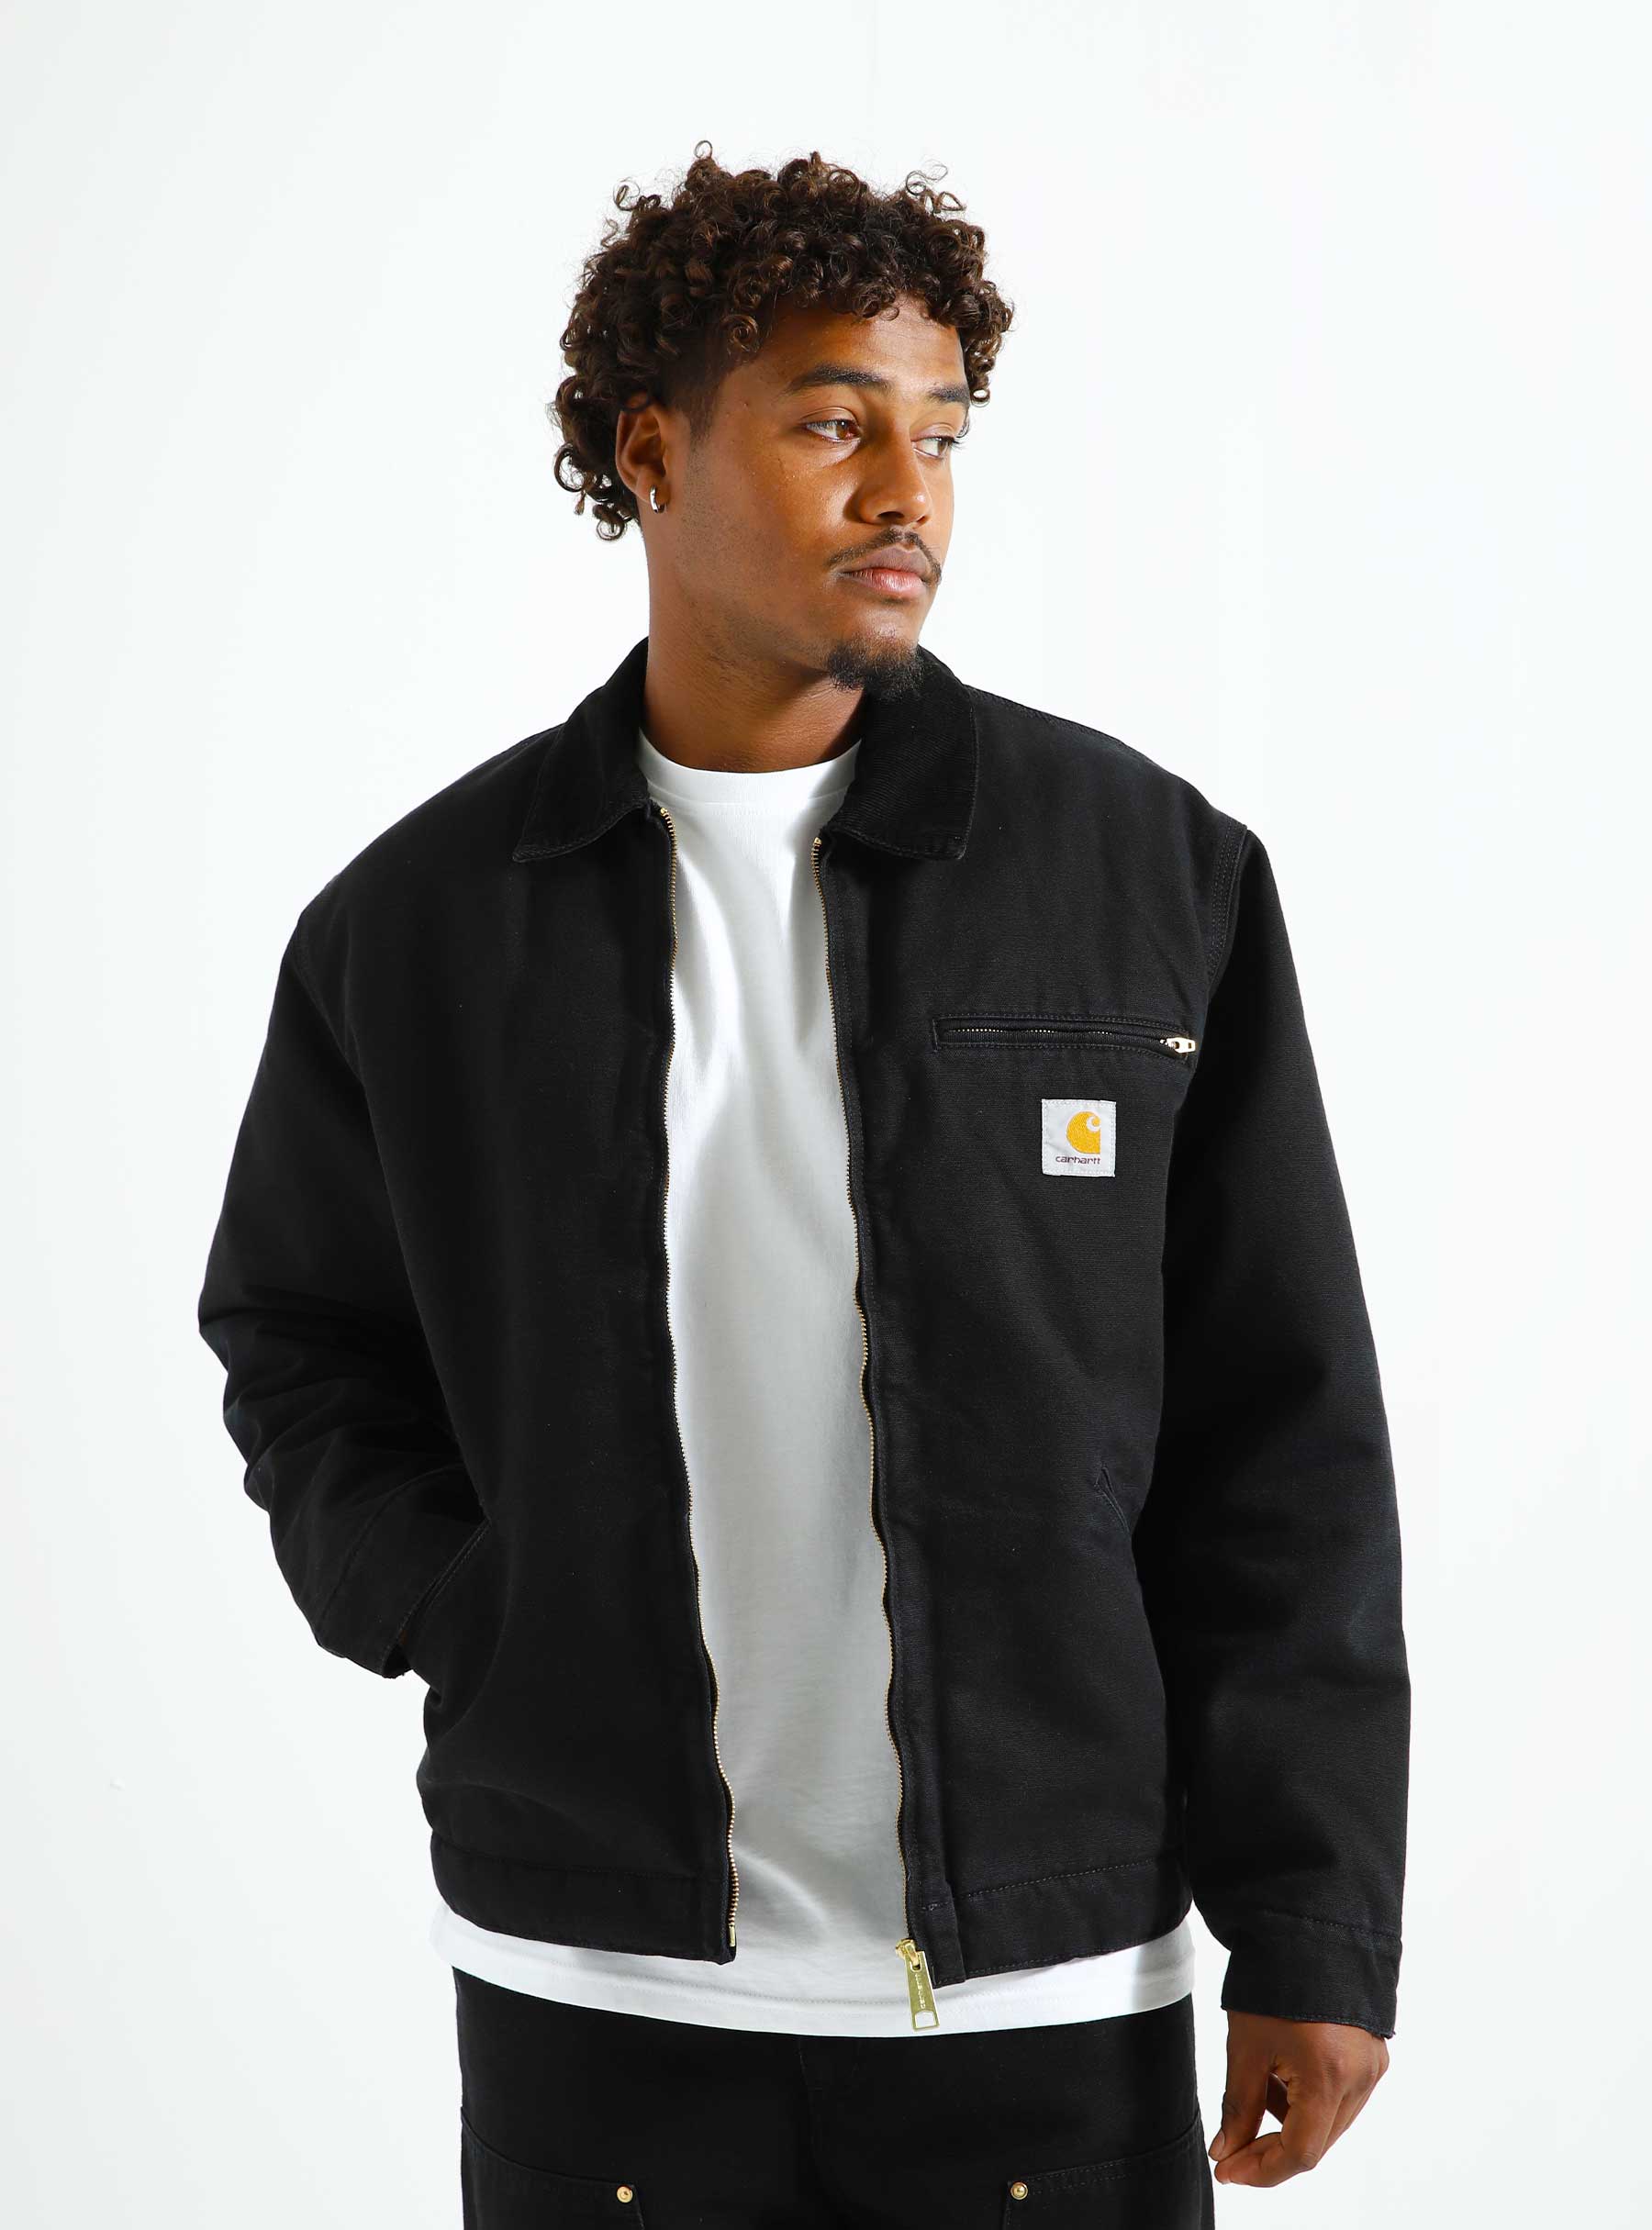 carhartt detroit jacket black 40